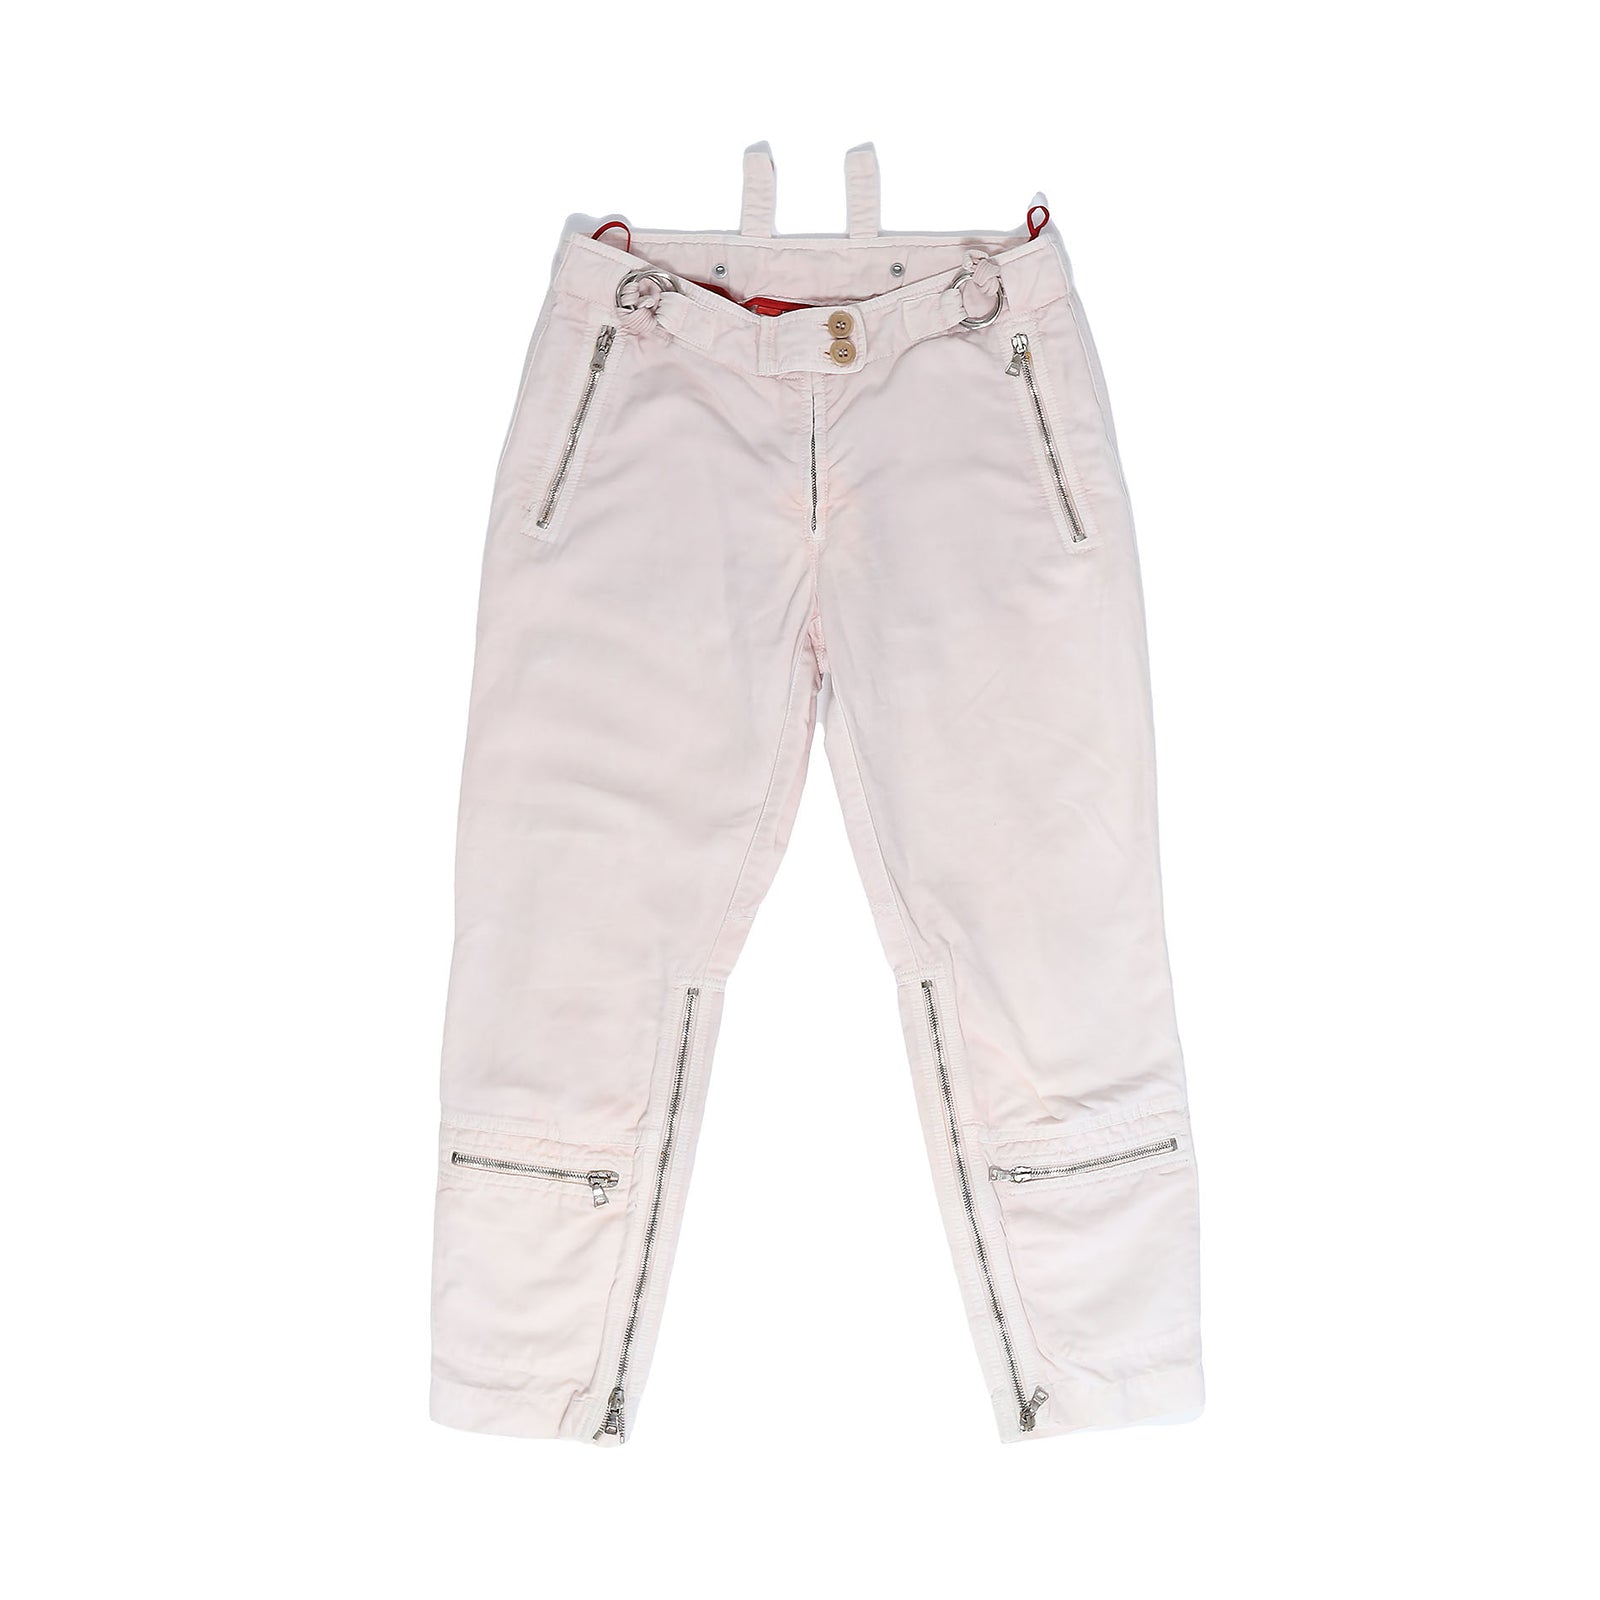 Prada Sport s Cotton Zipped Pants   Ākaibu Store